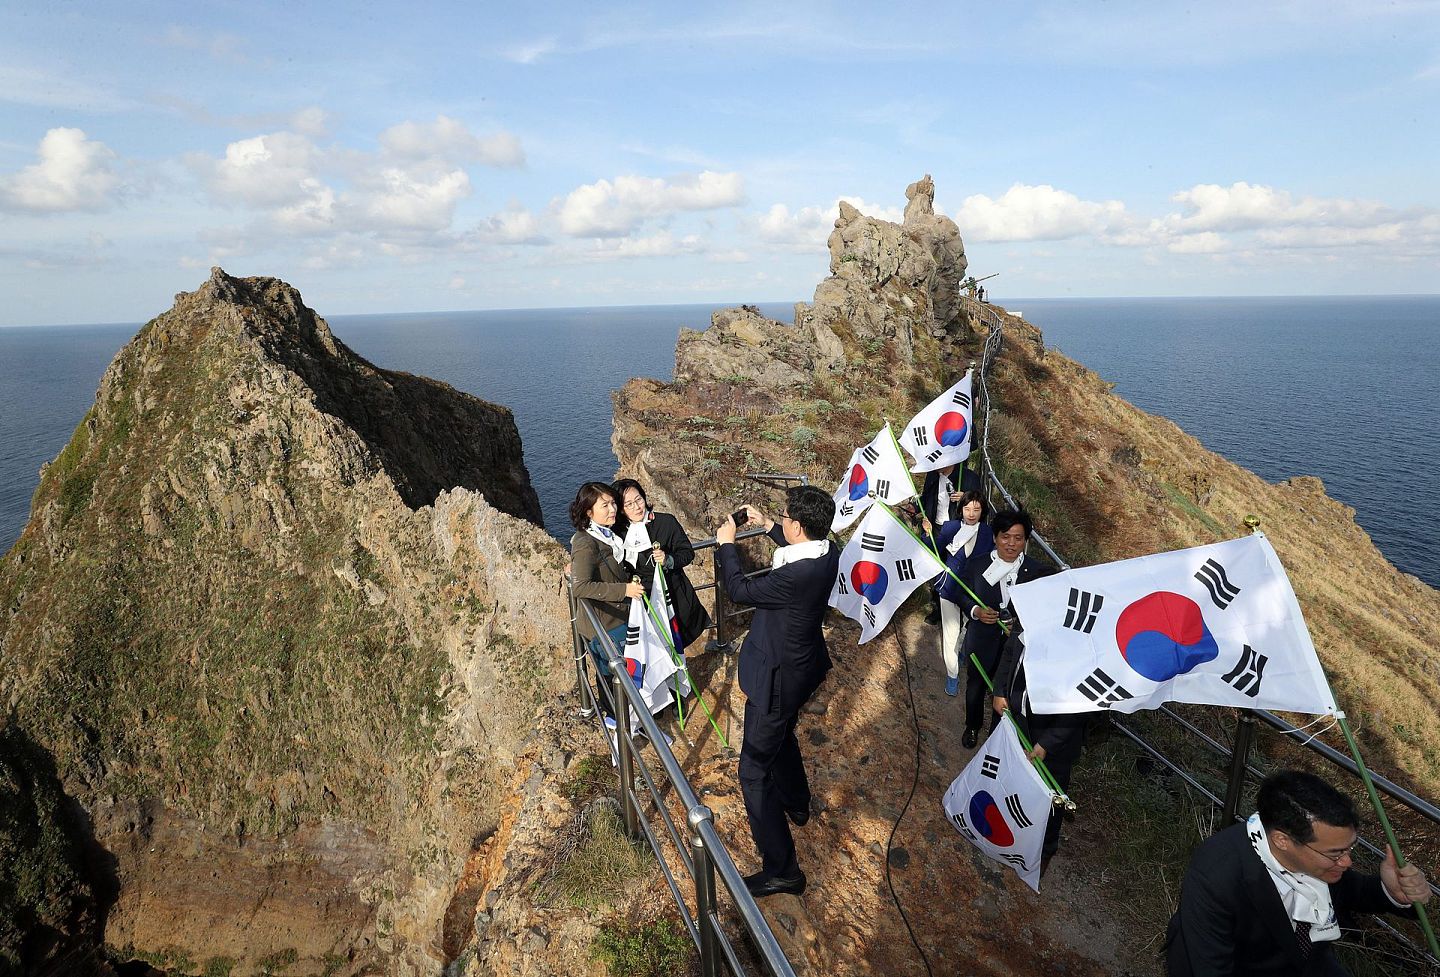 当地时间2018年10月22日，韩国国会教育委员会所属议员登韩日争议岛屿（日本称“竹岛”），并手举太极旗合影留念。10月25日是韩国“独岛日”。（视觉中国）